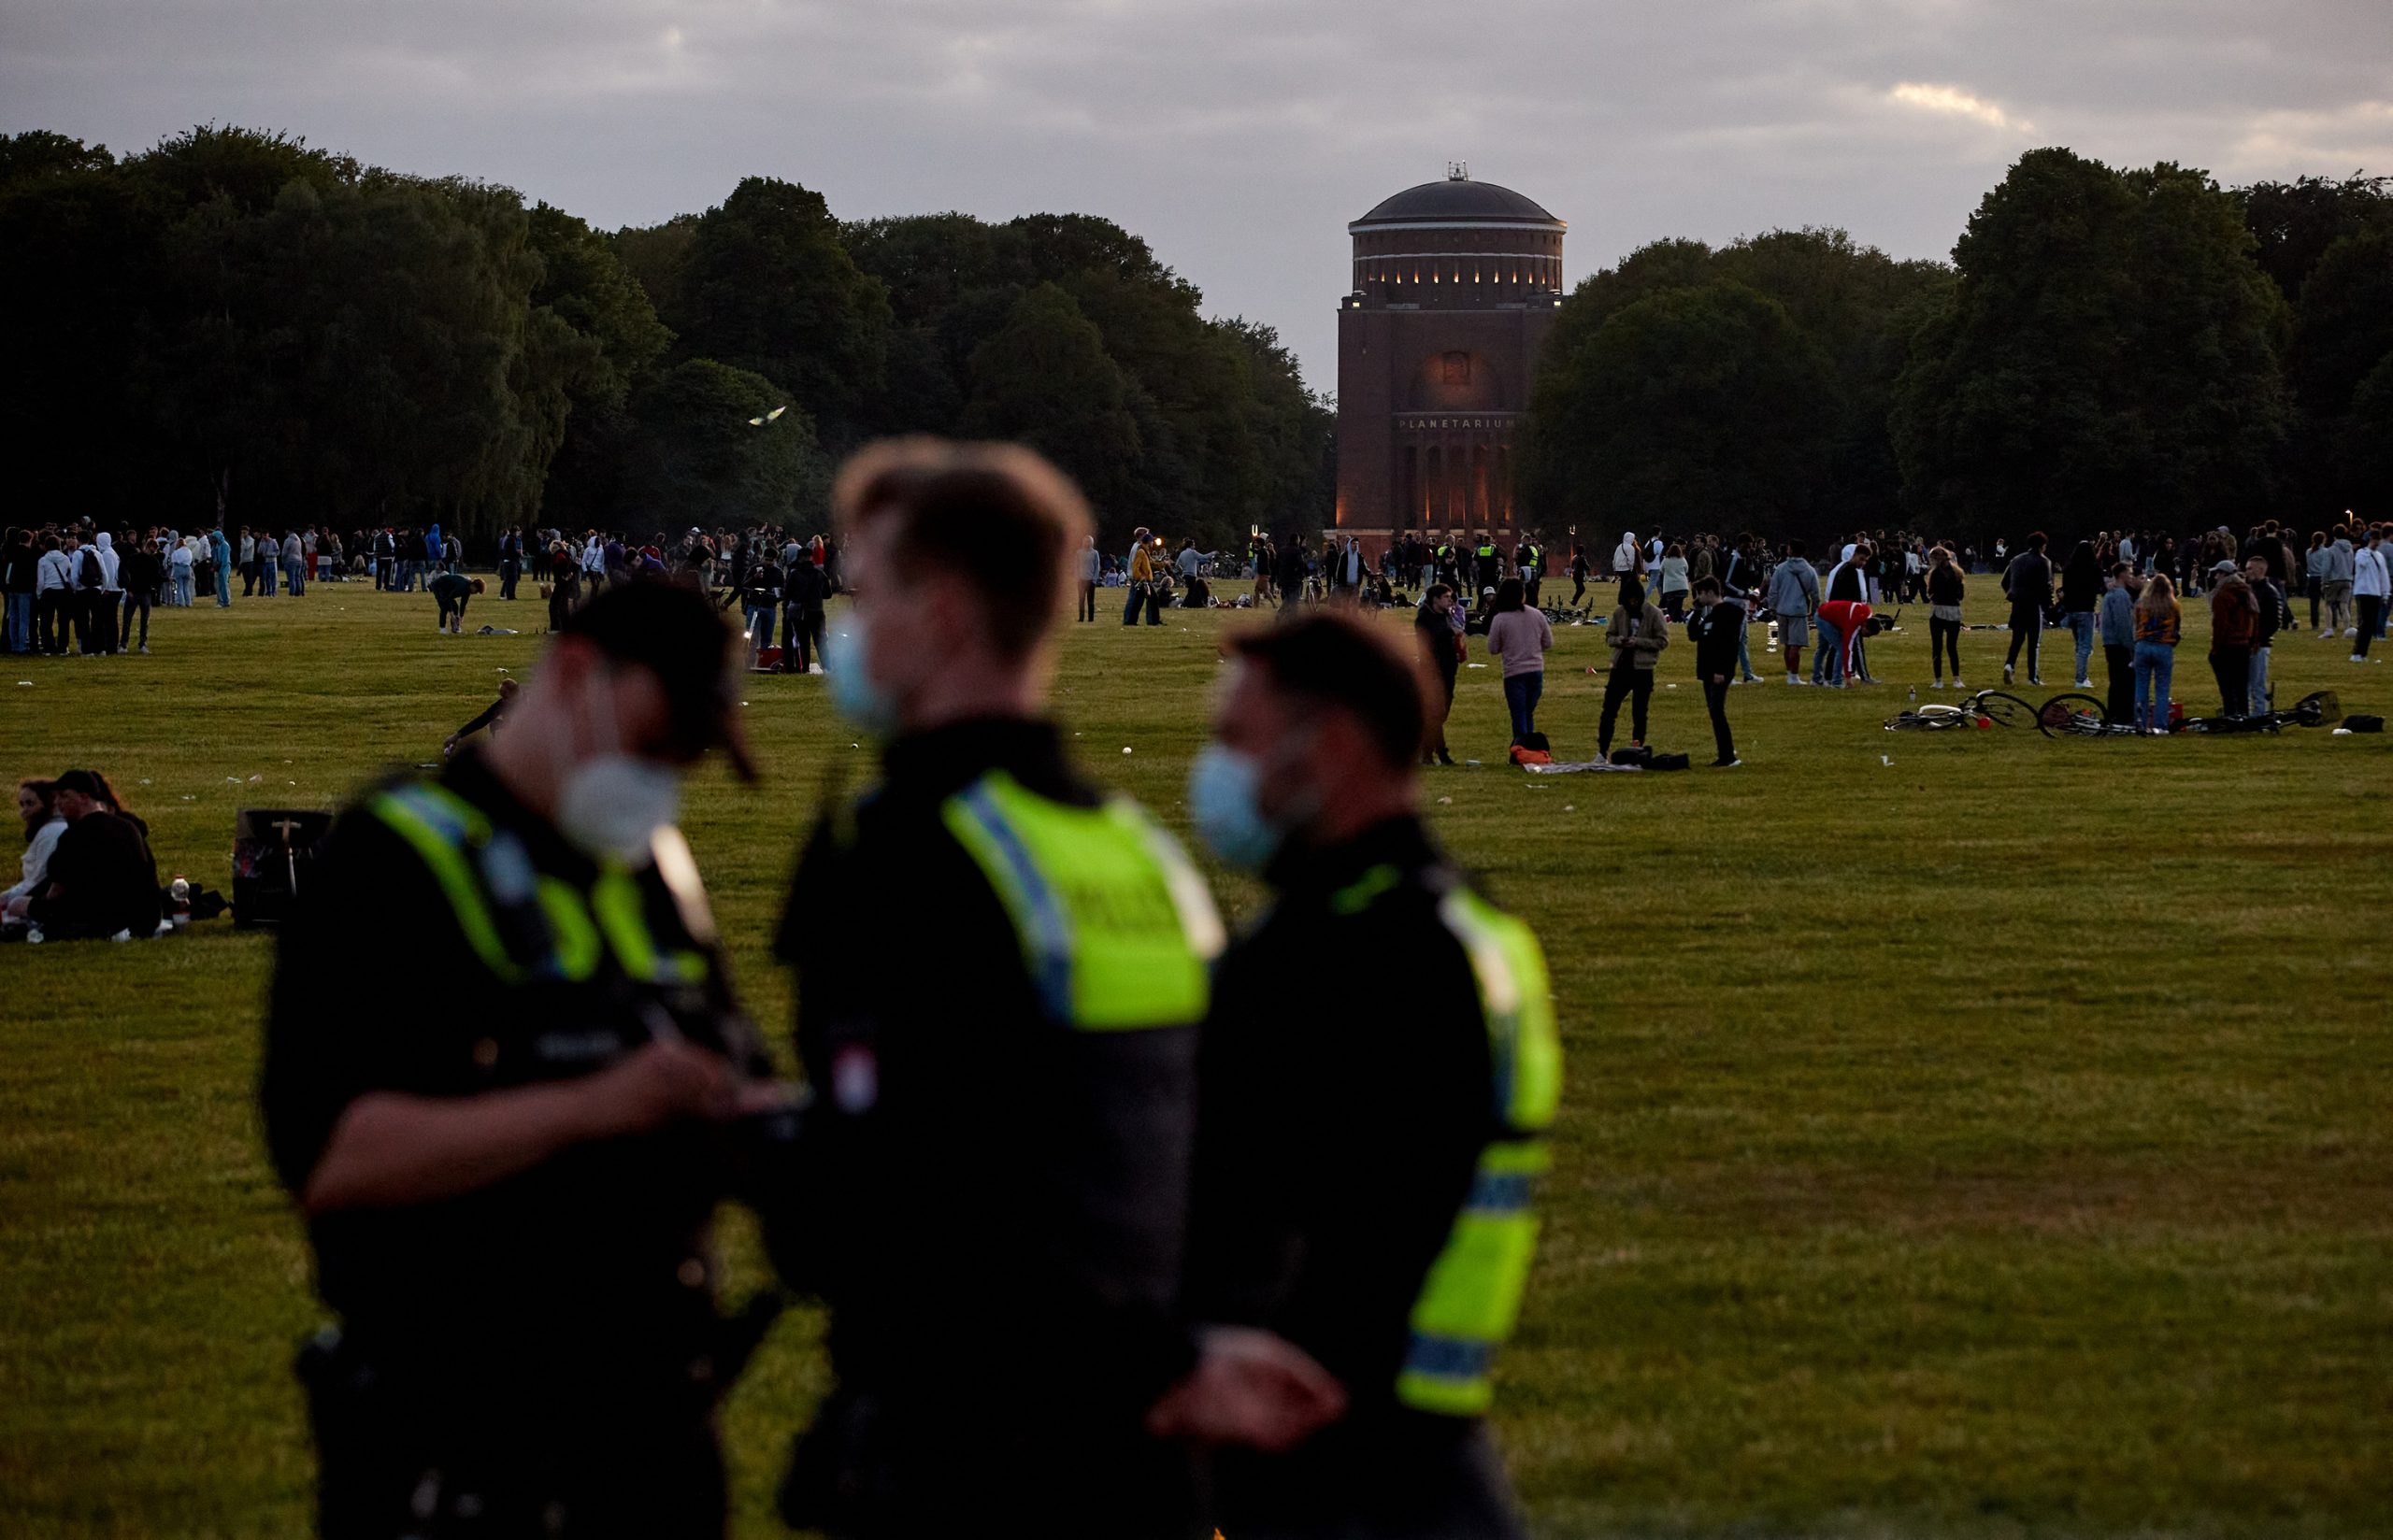 Polizisten überwachen das Geschehen im Hamburger Stadtparka am Wochenende.